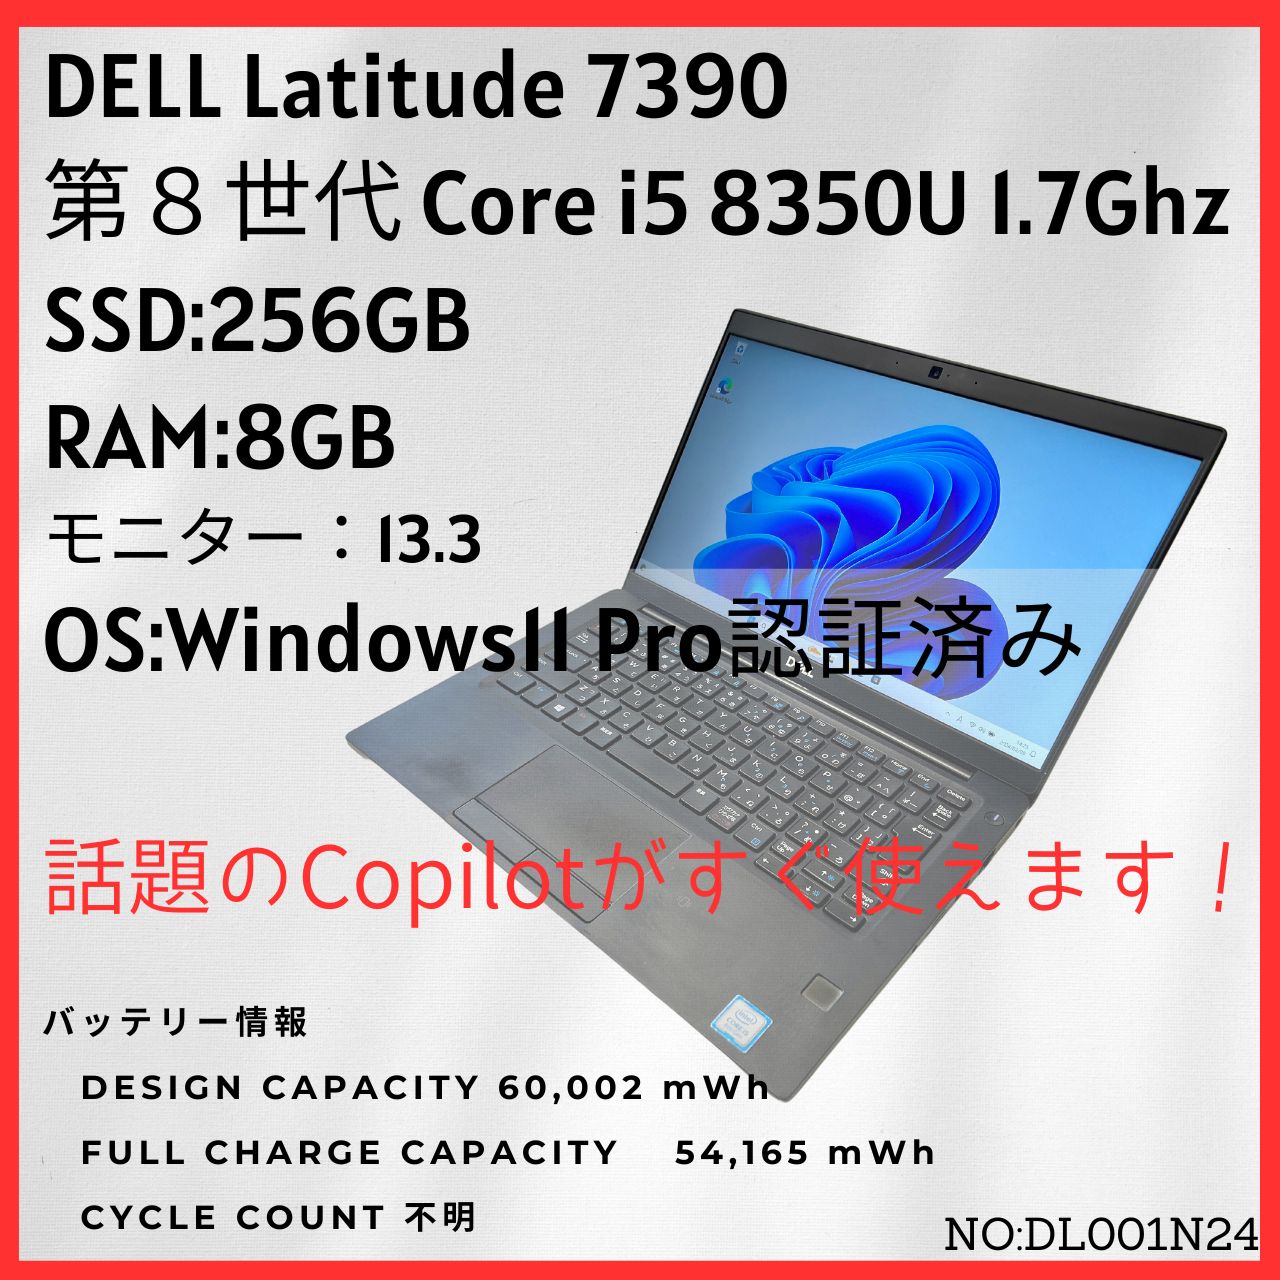 デル 5580 ノートパソコン M.2 ssd 256GB 2018年モデル - ノートPC